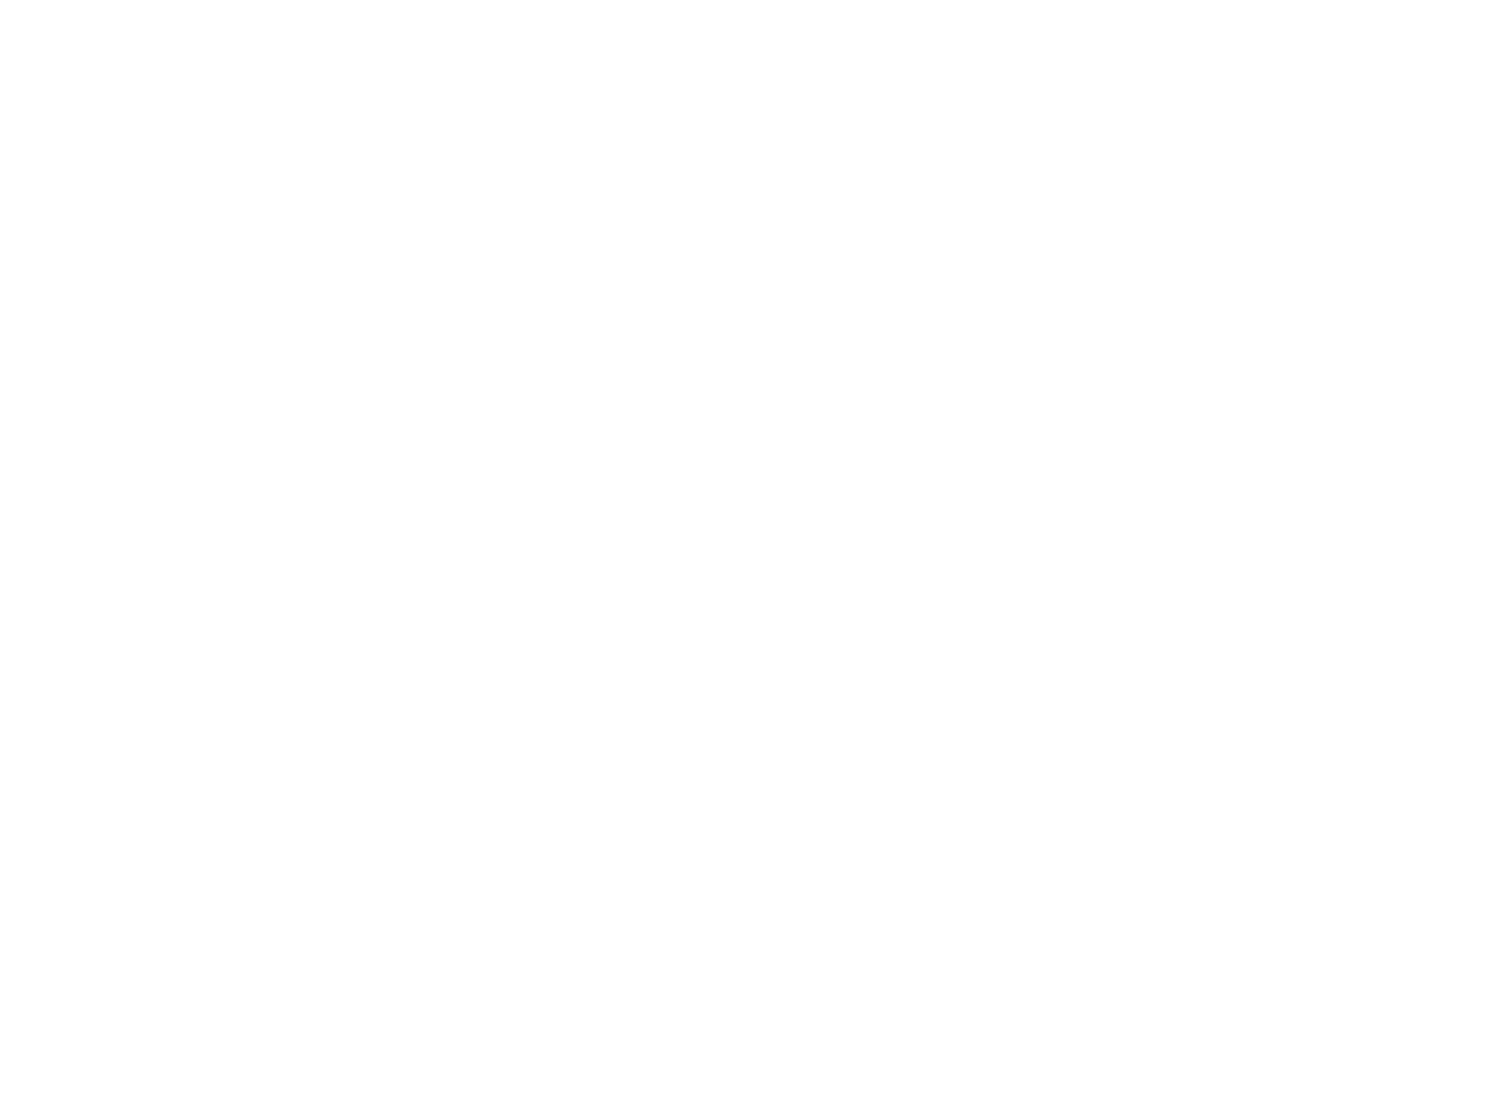 Akatsuki Corp. logo for dark backgrounds (transparent PNG)